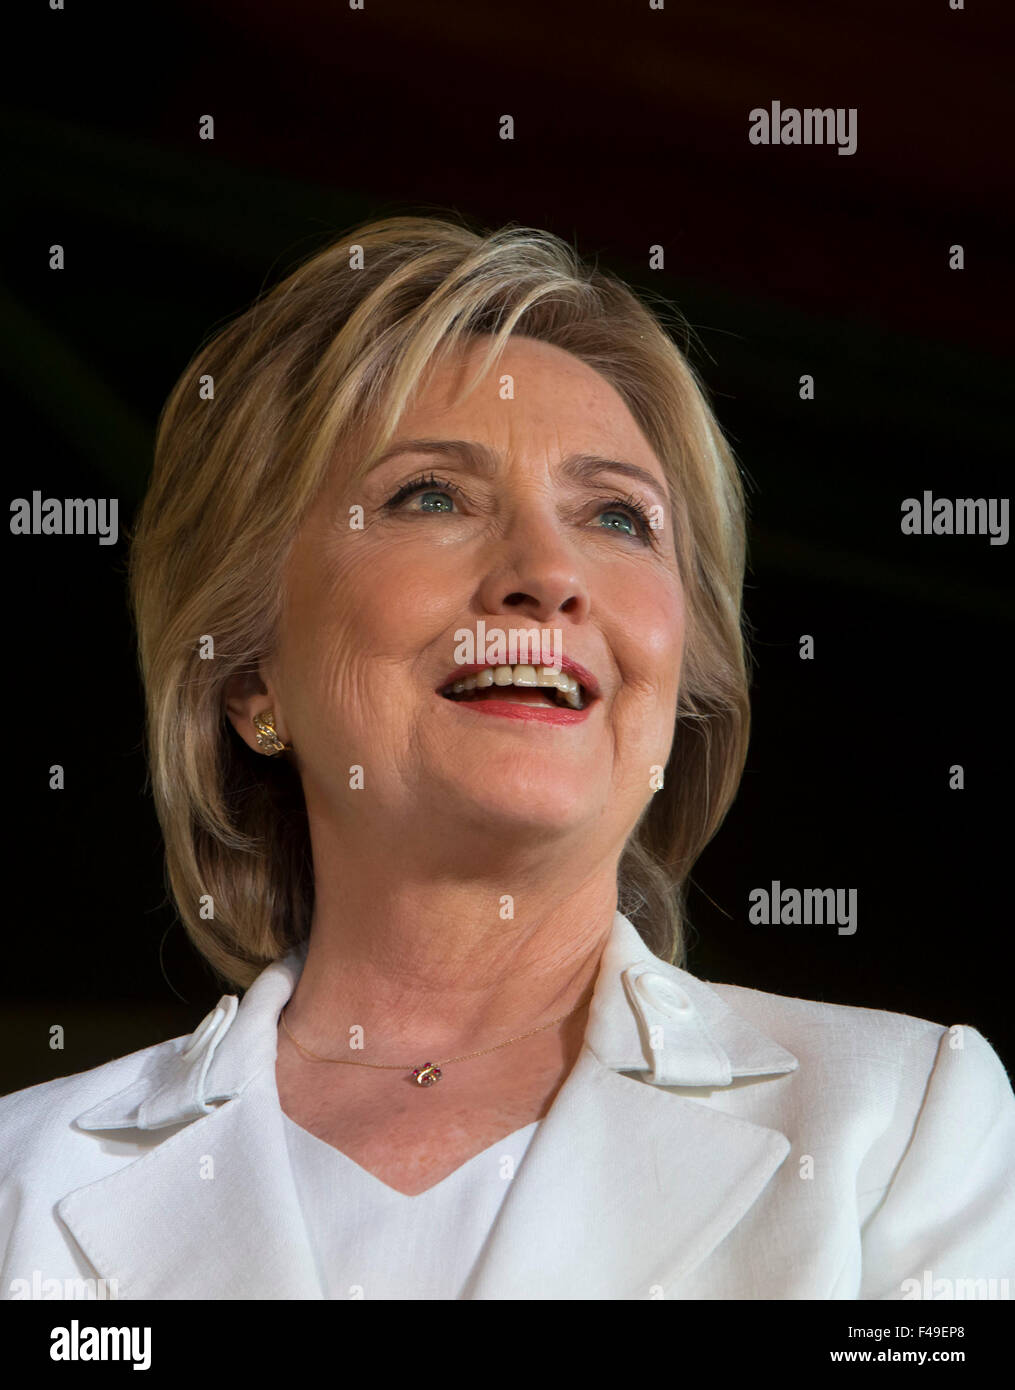 Élection présidentielle démocratique nous espérons Hillary Clinton salue des partisans pendant un arret de campagne à San Antonio, Texas Banque D'Images